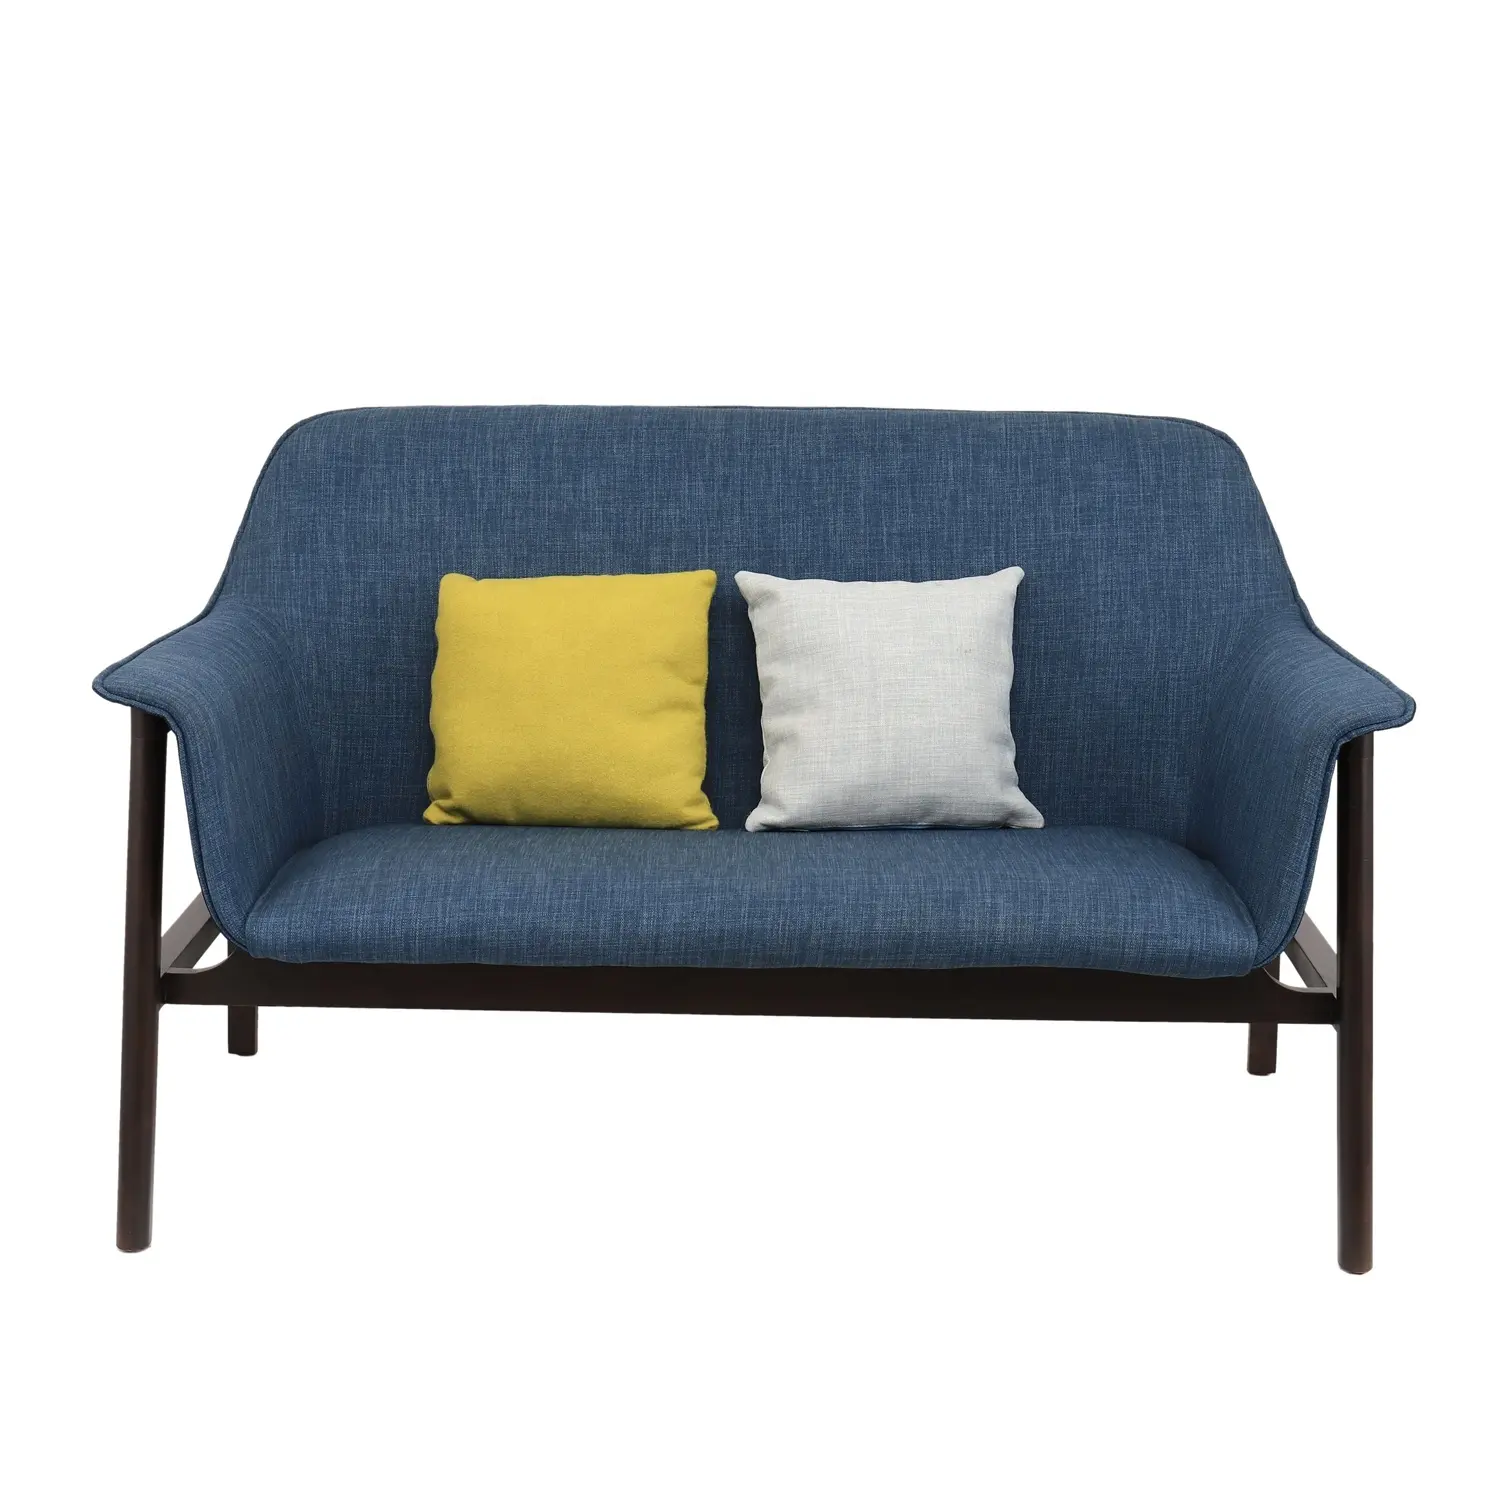 Furnitur ruang tamu sofa, kursi hangat dan elegan modern linen kain bantal kursi ruang tamu santai